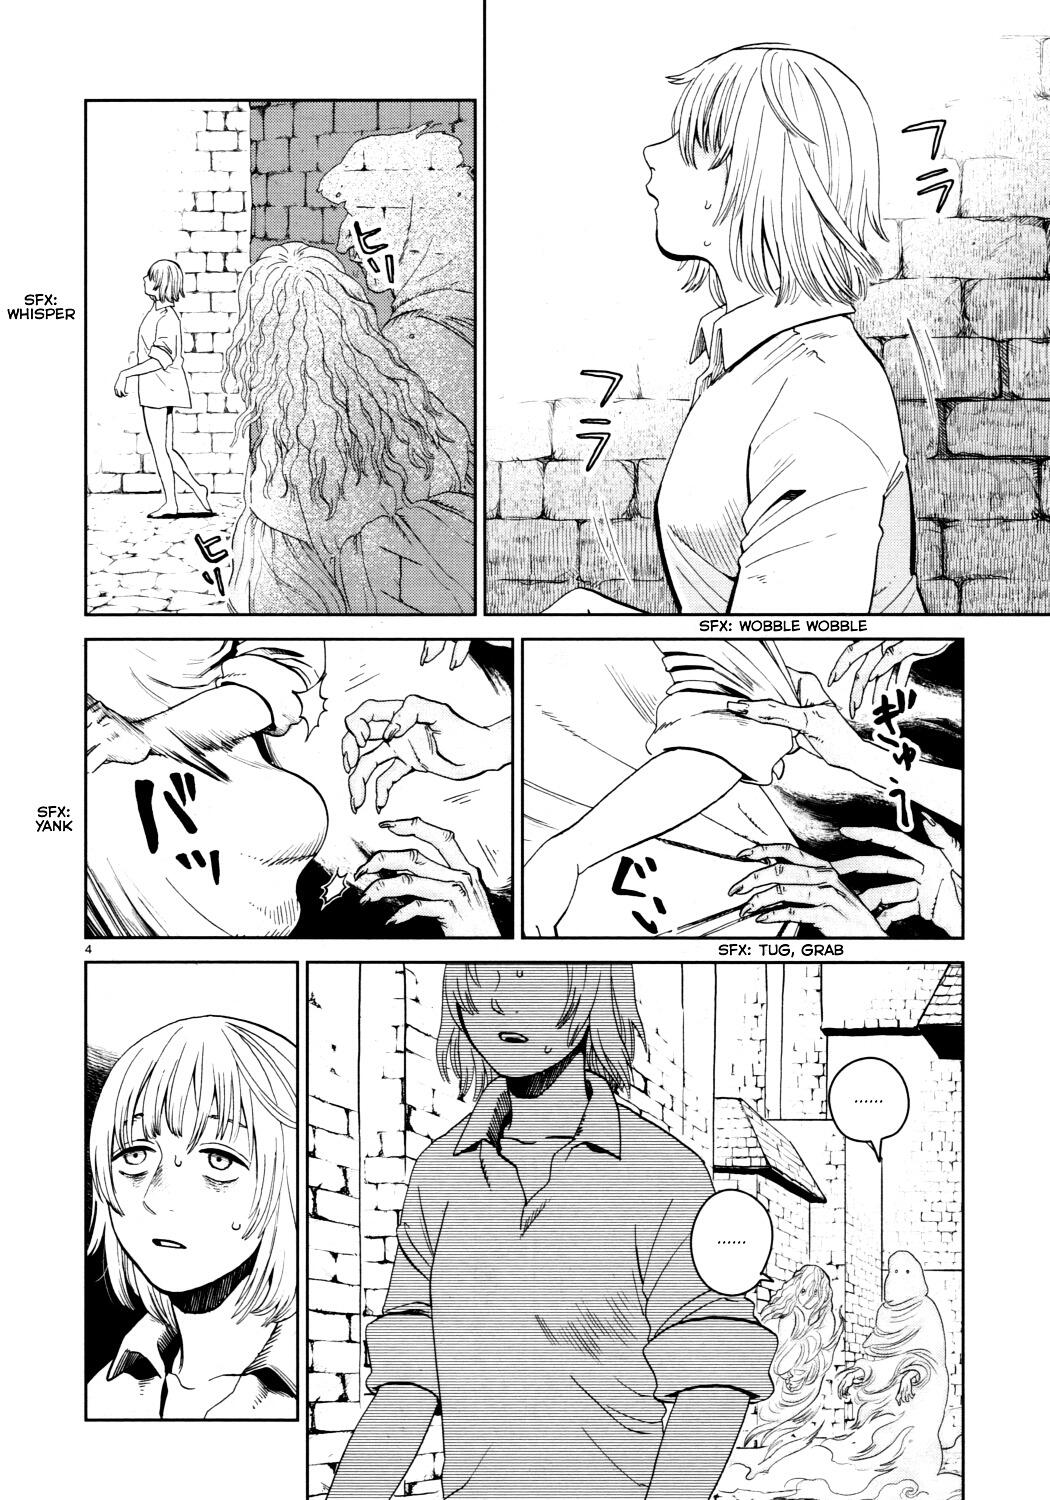 Dungeon Meshi Chapter 29 : Red Dragon Vii page 4 - Mangakakalot